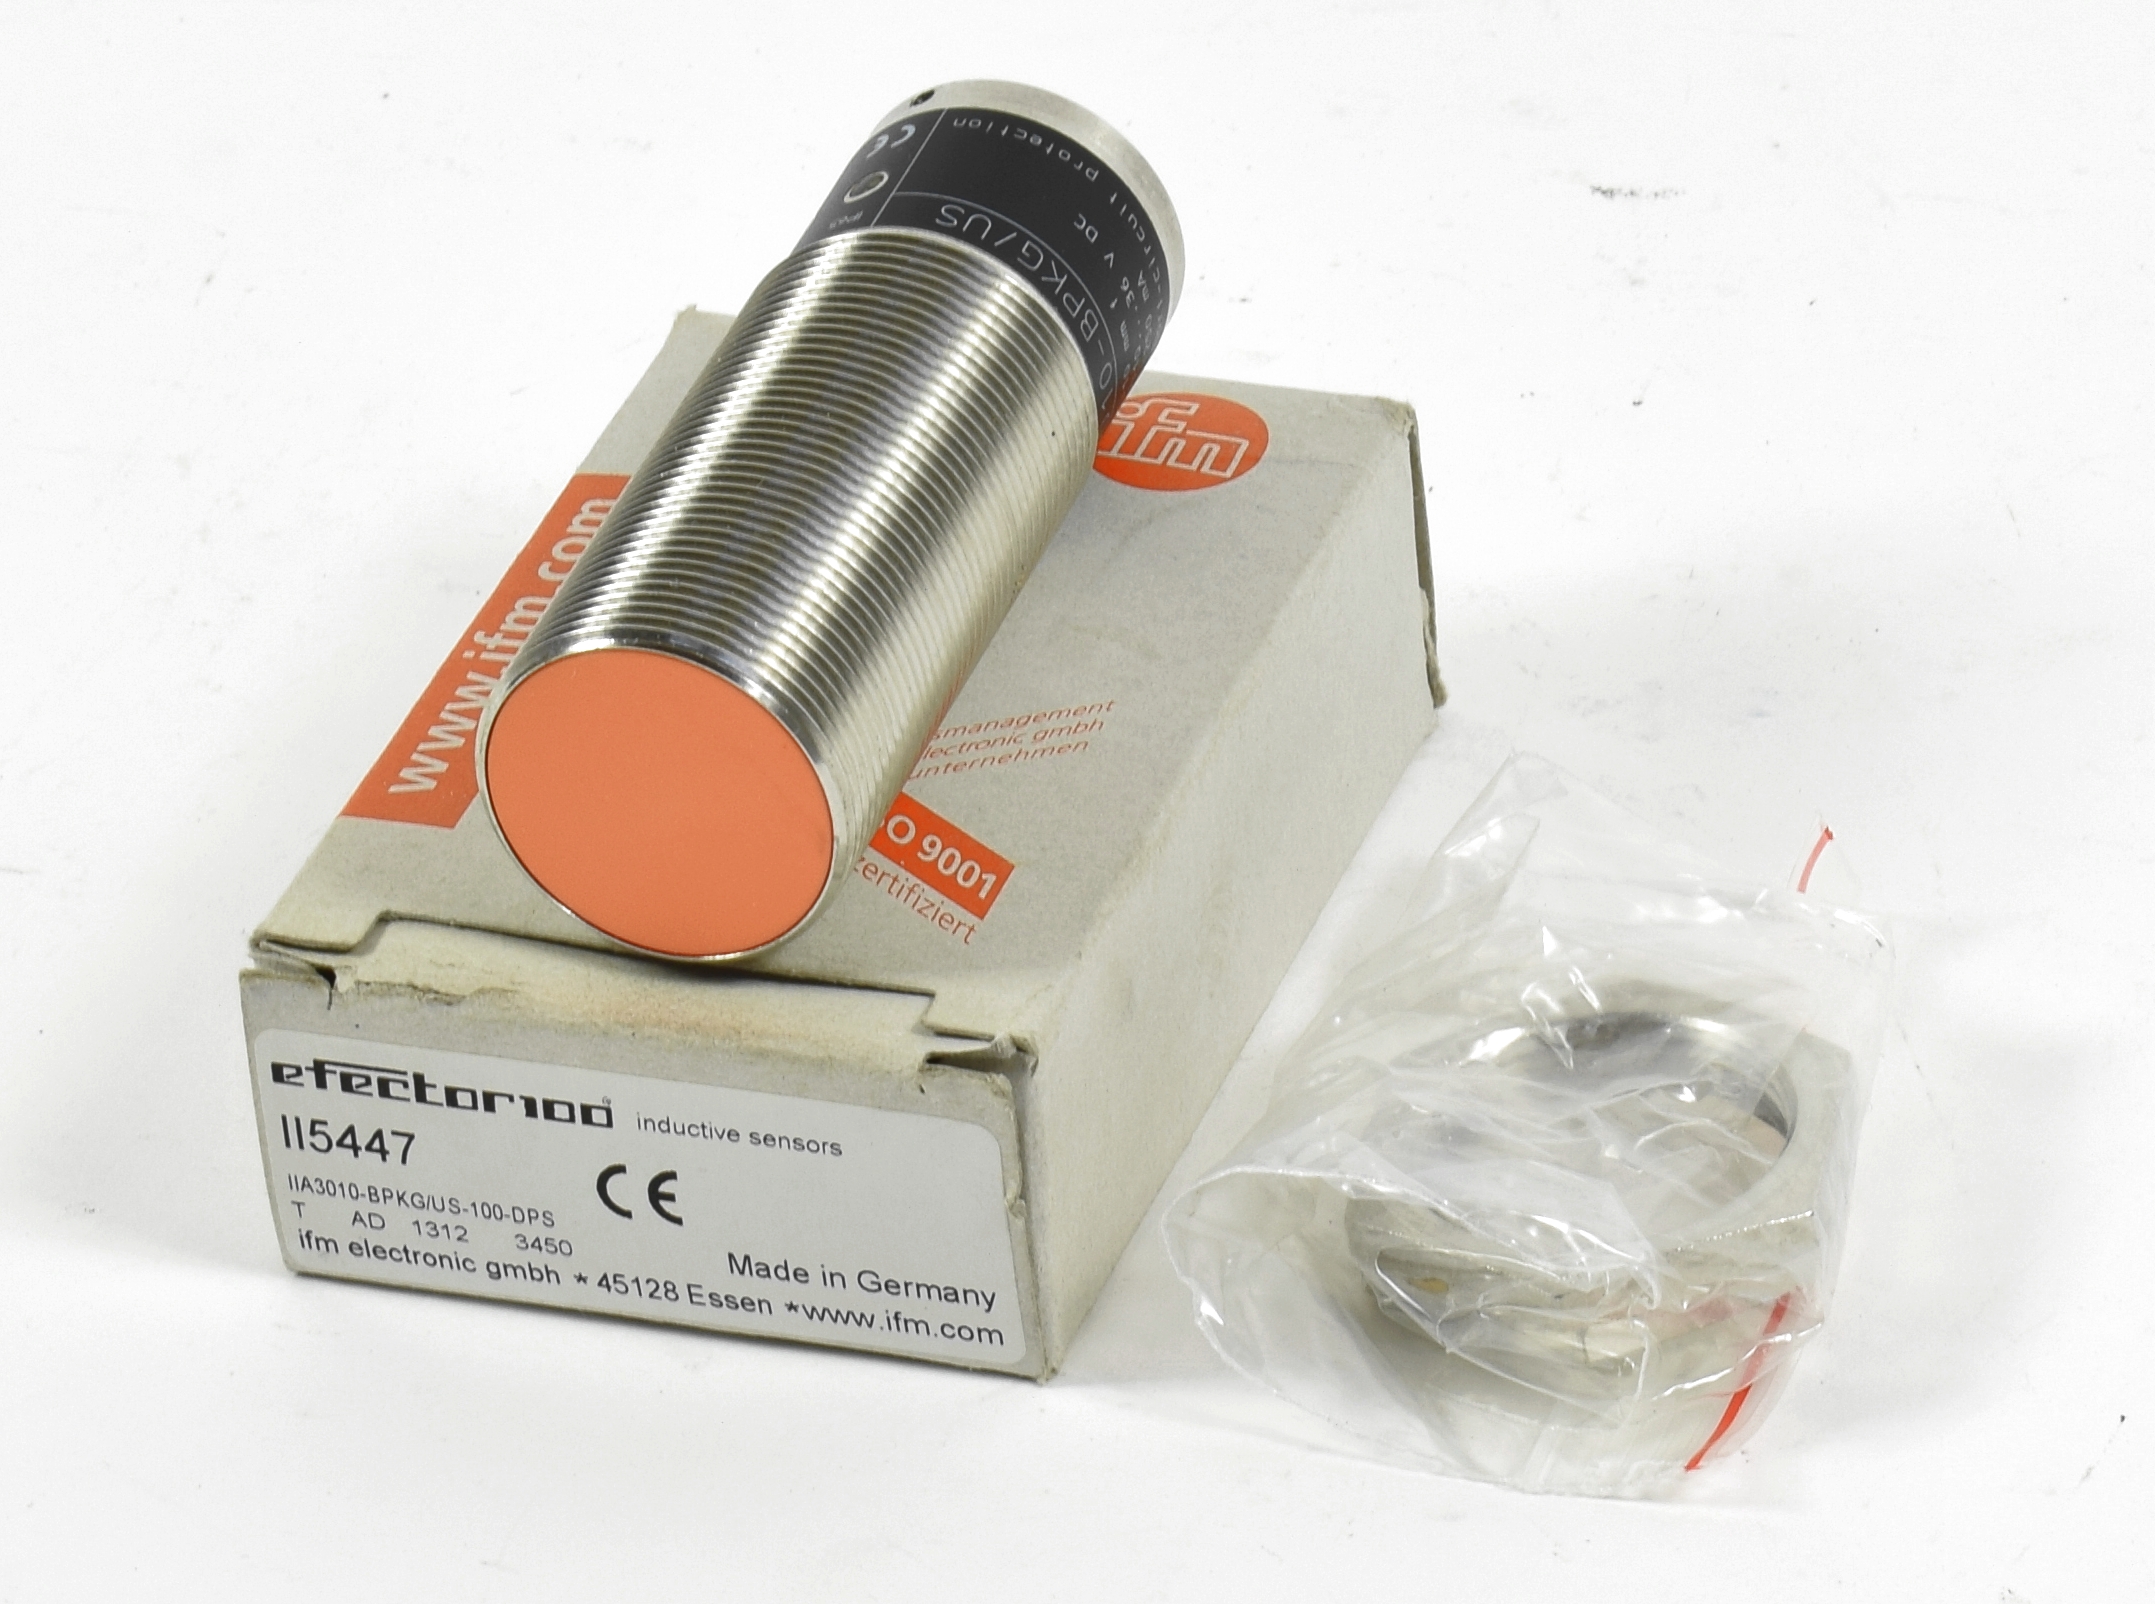 HEEPDD 2 Pcs Hohe Genauigkeit Luftfeuchtigkeit und Temperatursensor Sonde Mehrzweckinkubator Regler für Industrielle Inkubator Zubehör 